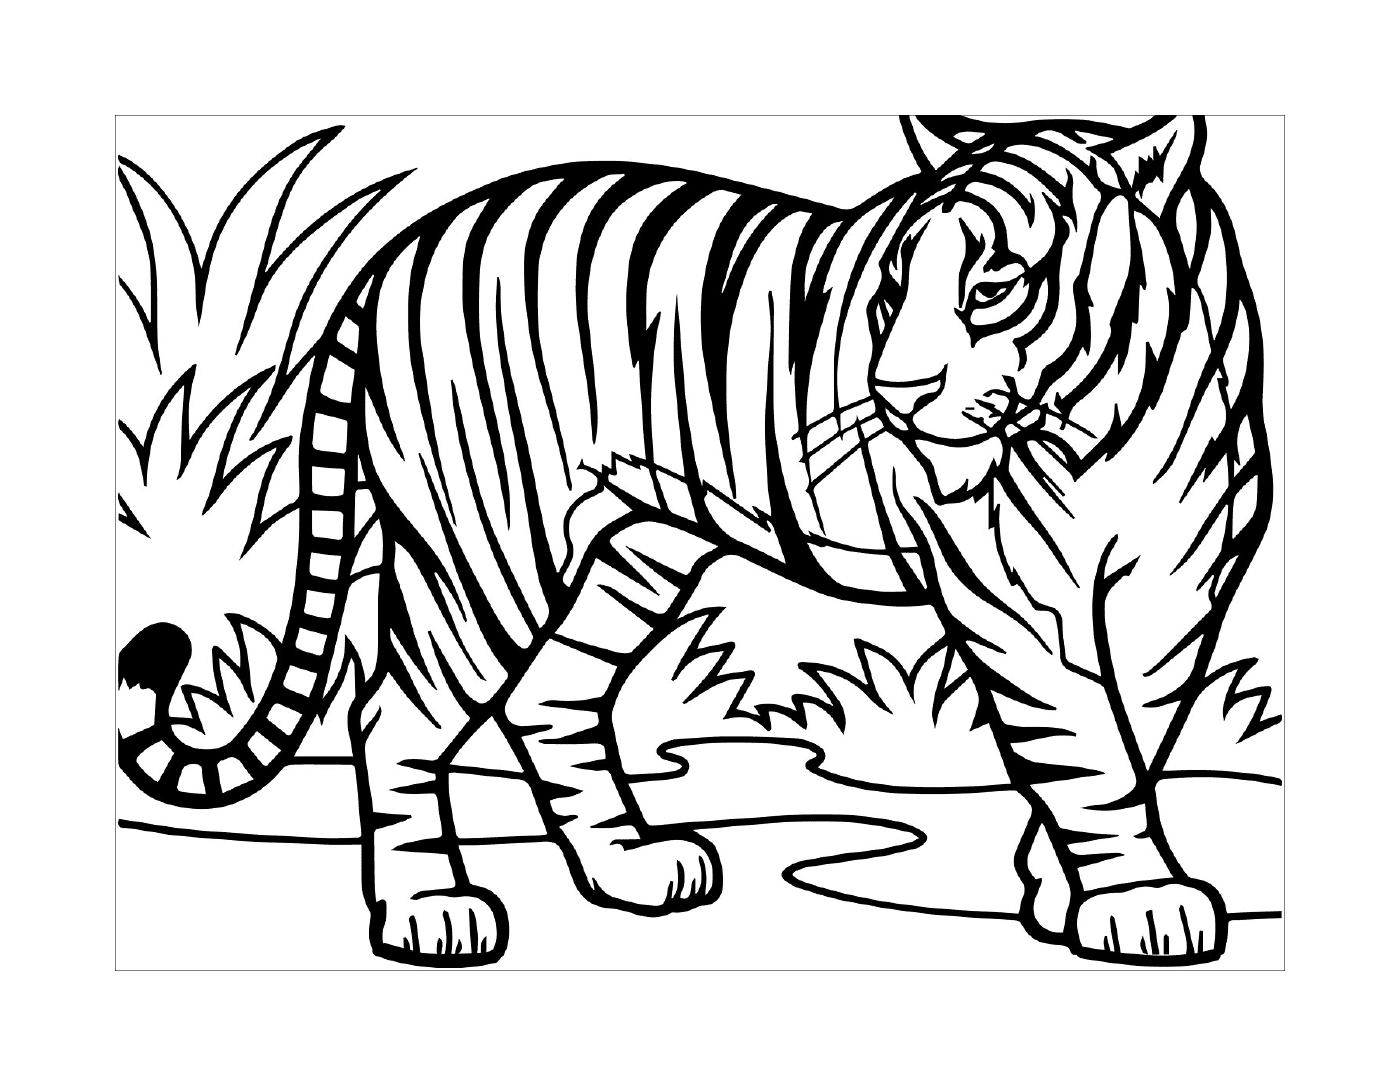  Un tigre salvaje en la naturaleza 